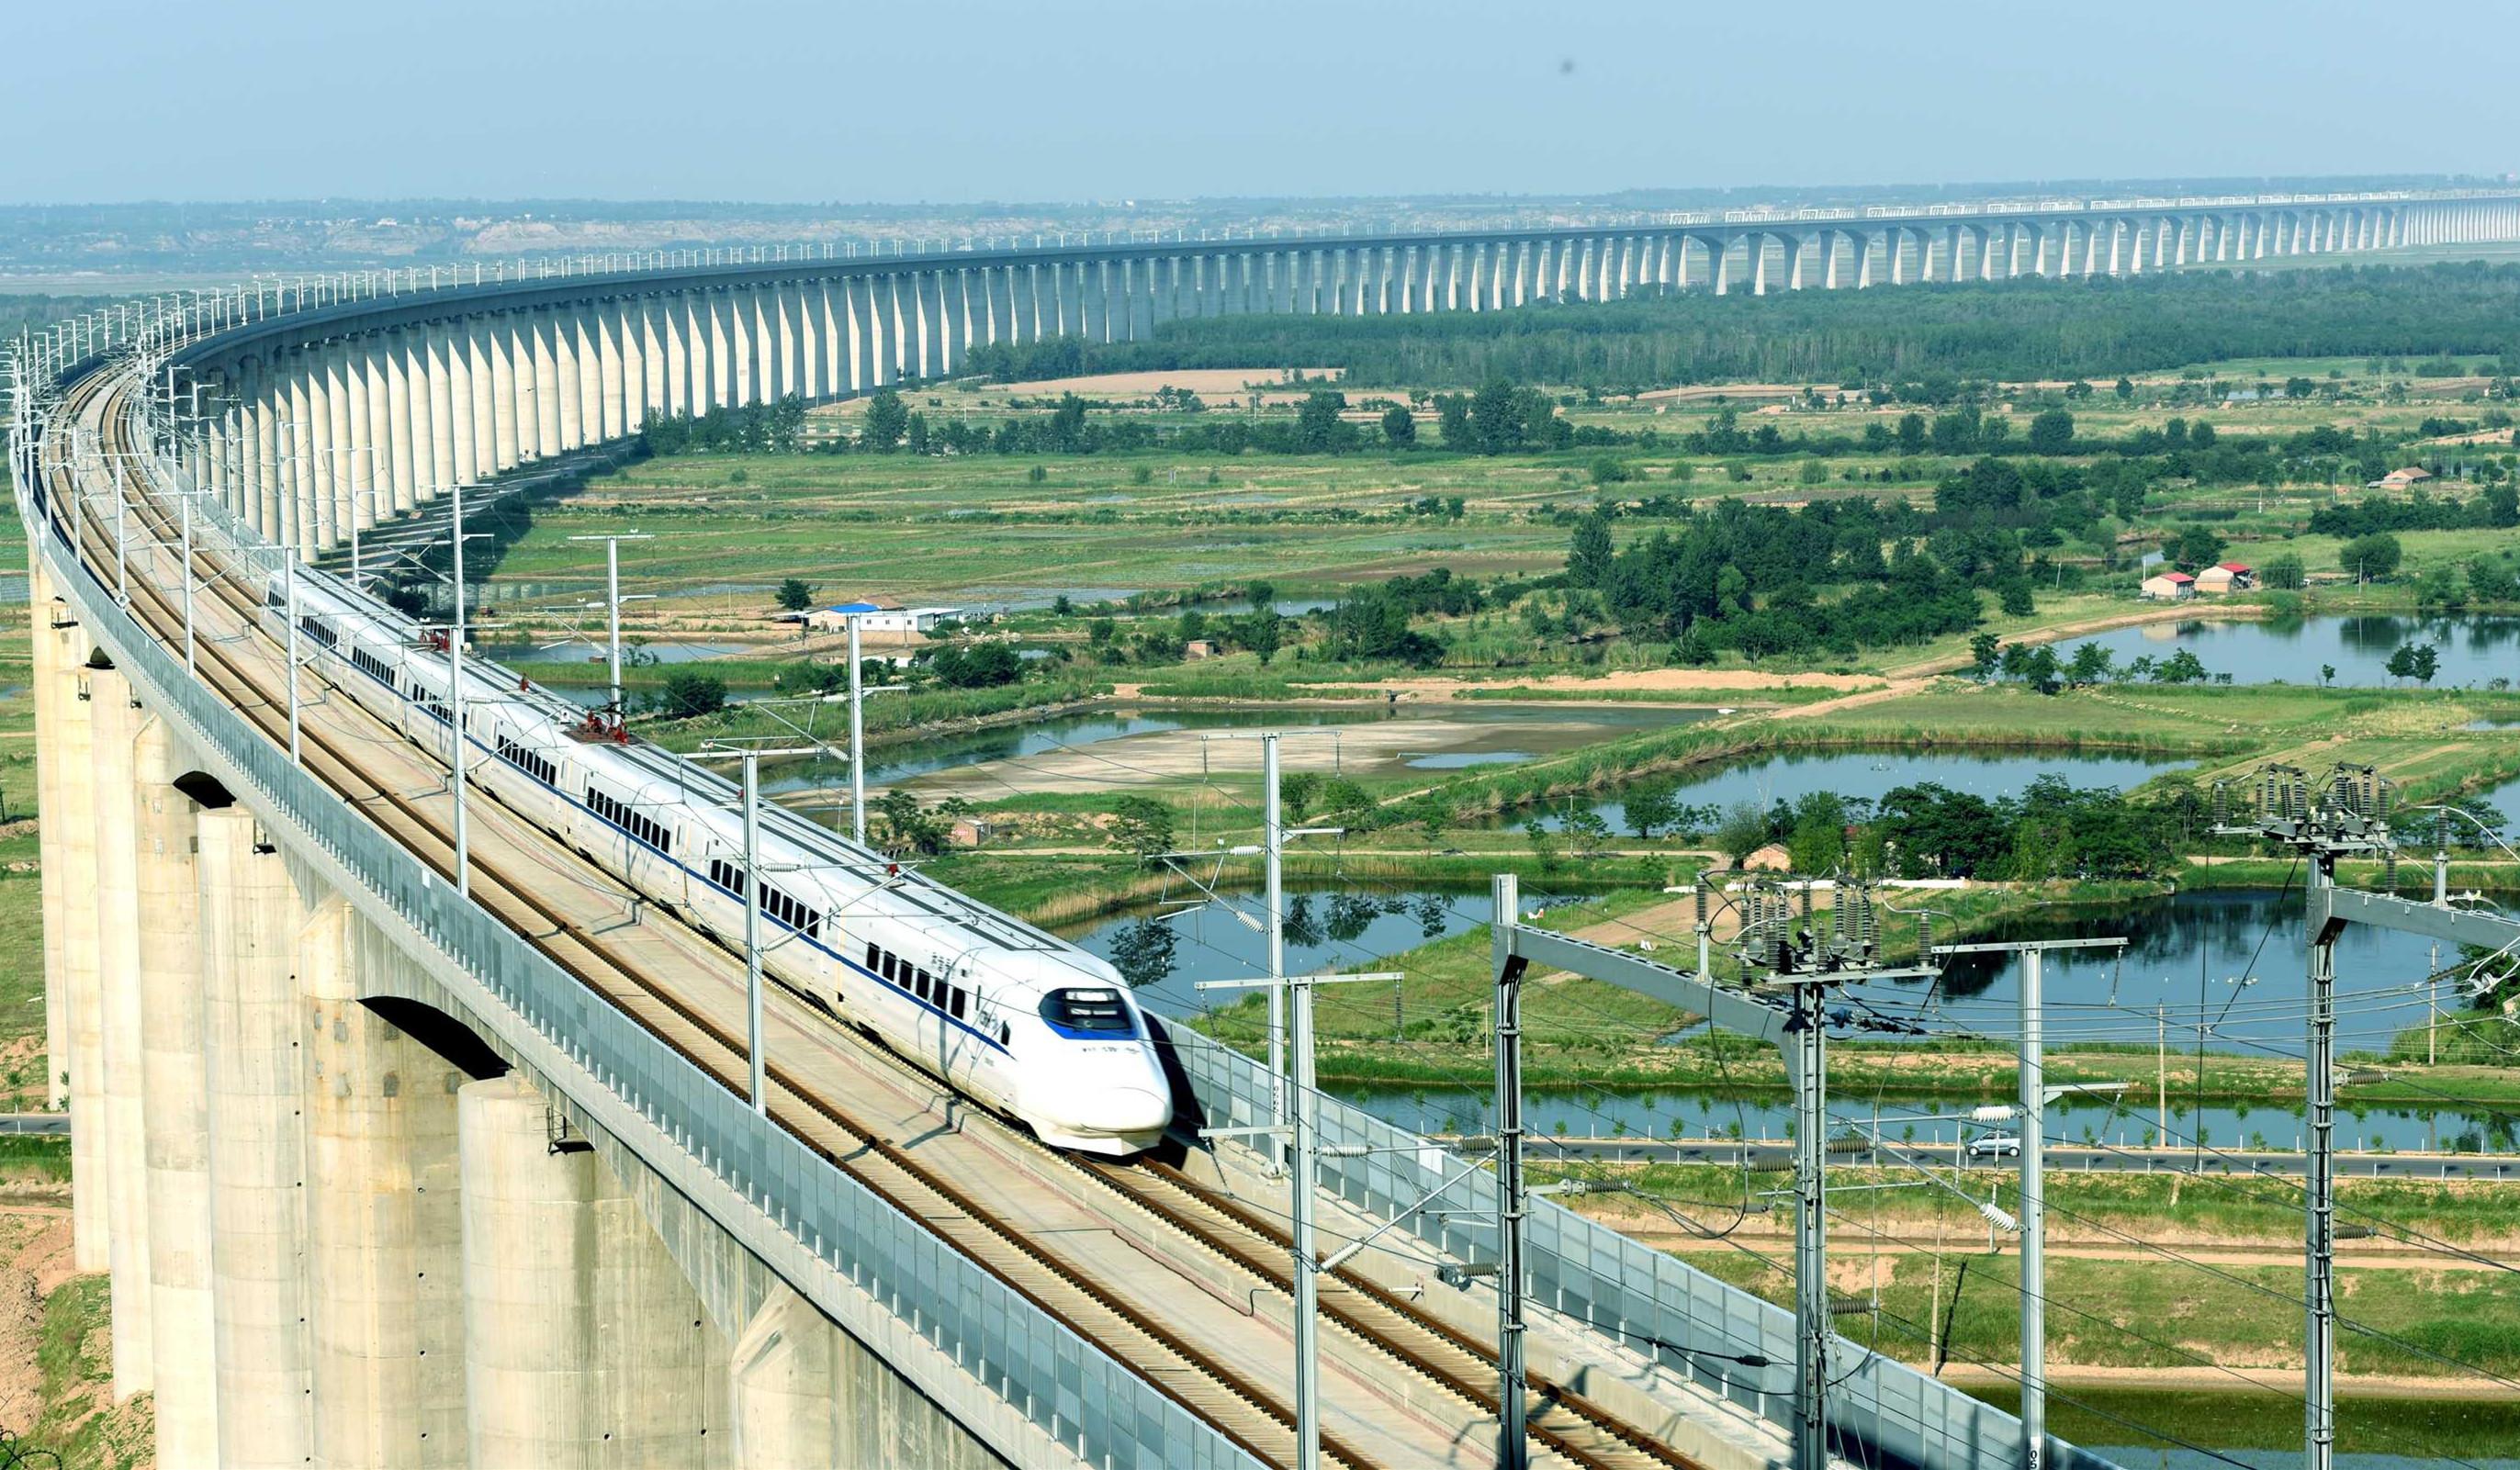 这条新的铁路线名叫滨潍高速铁路,还没有开始修建,但是规划已经提出